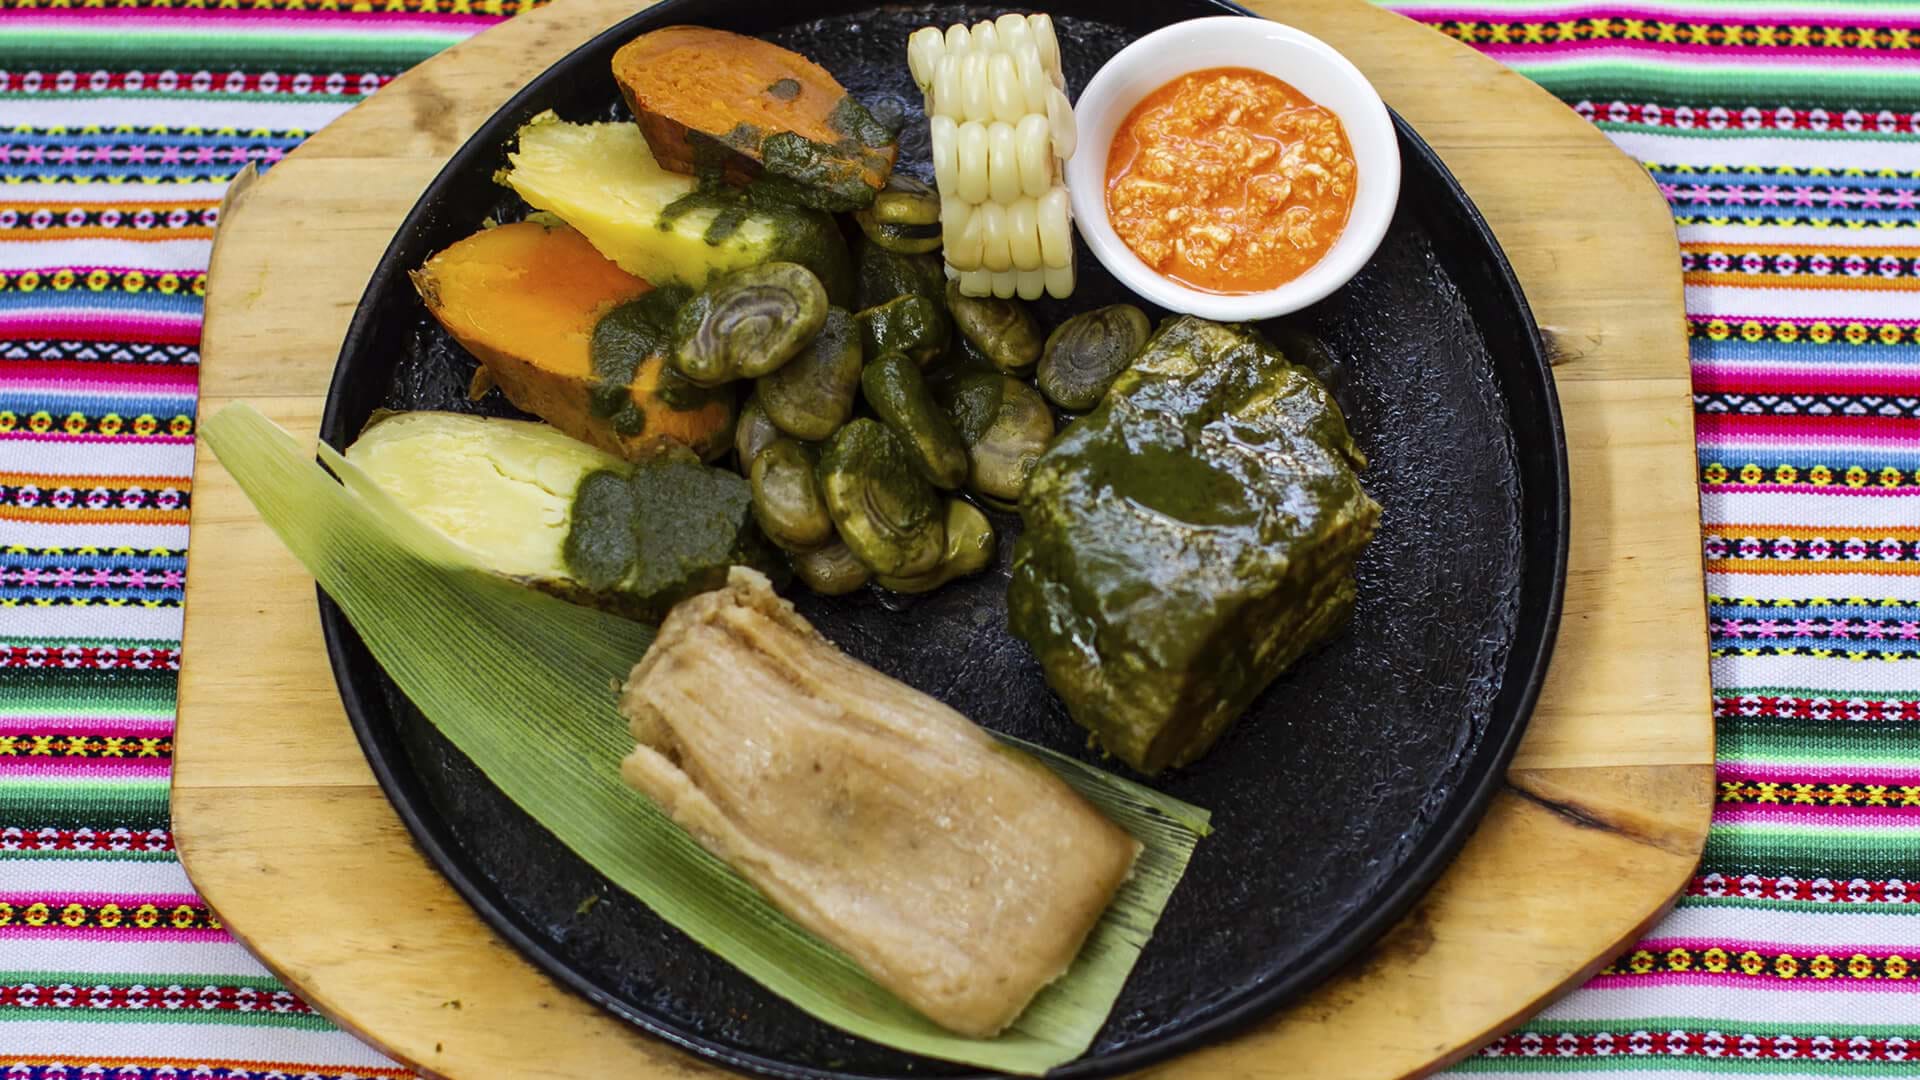 Embajador tierra principal Menagerry Deliciosos y nutritivos: aquí 6 platos típicos de los Andes peruanos